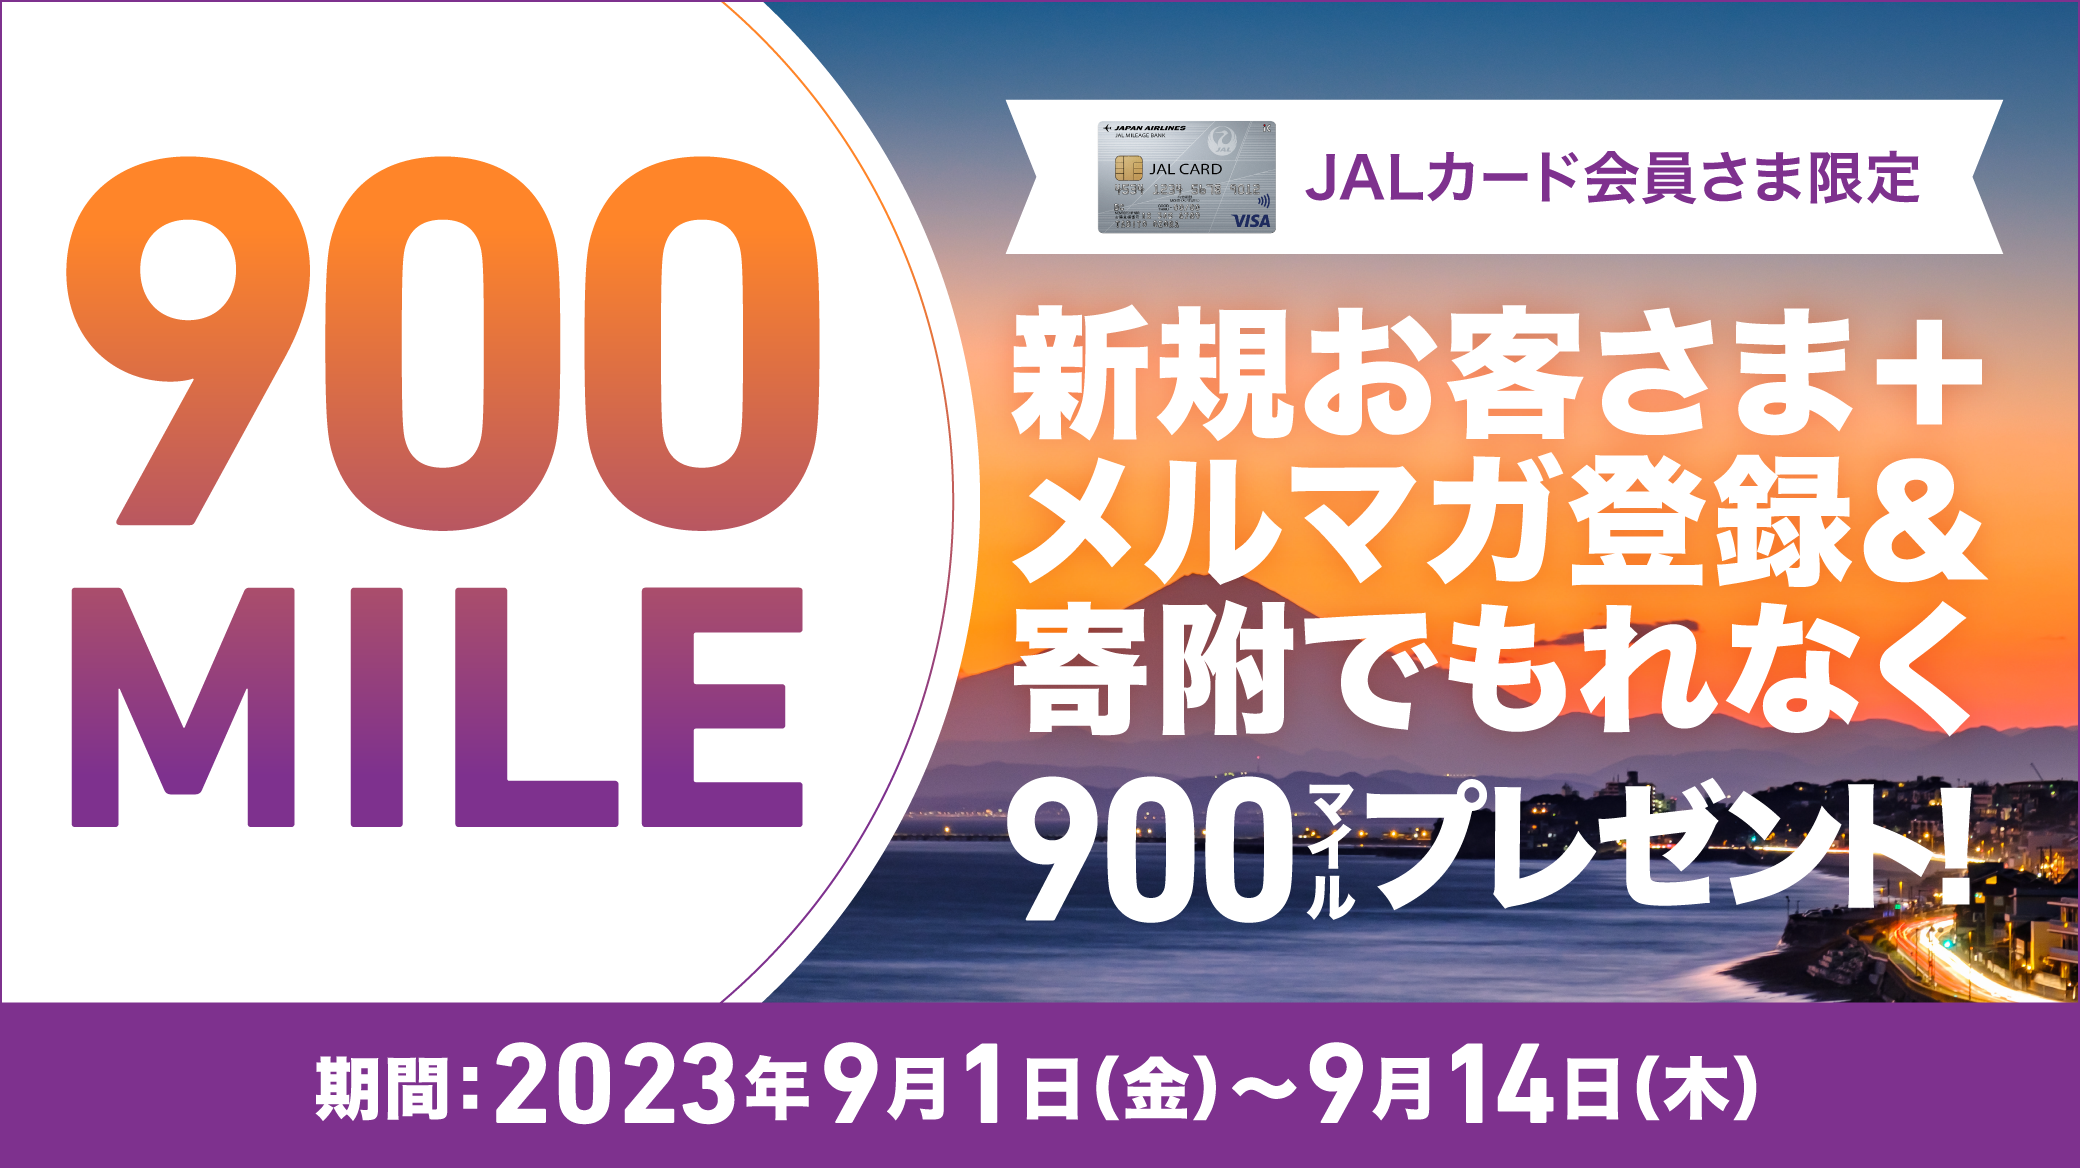 JALカード会員さま限定 新規お客さま登録&寄附でもれなく600マイルプレゼント！